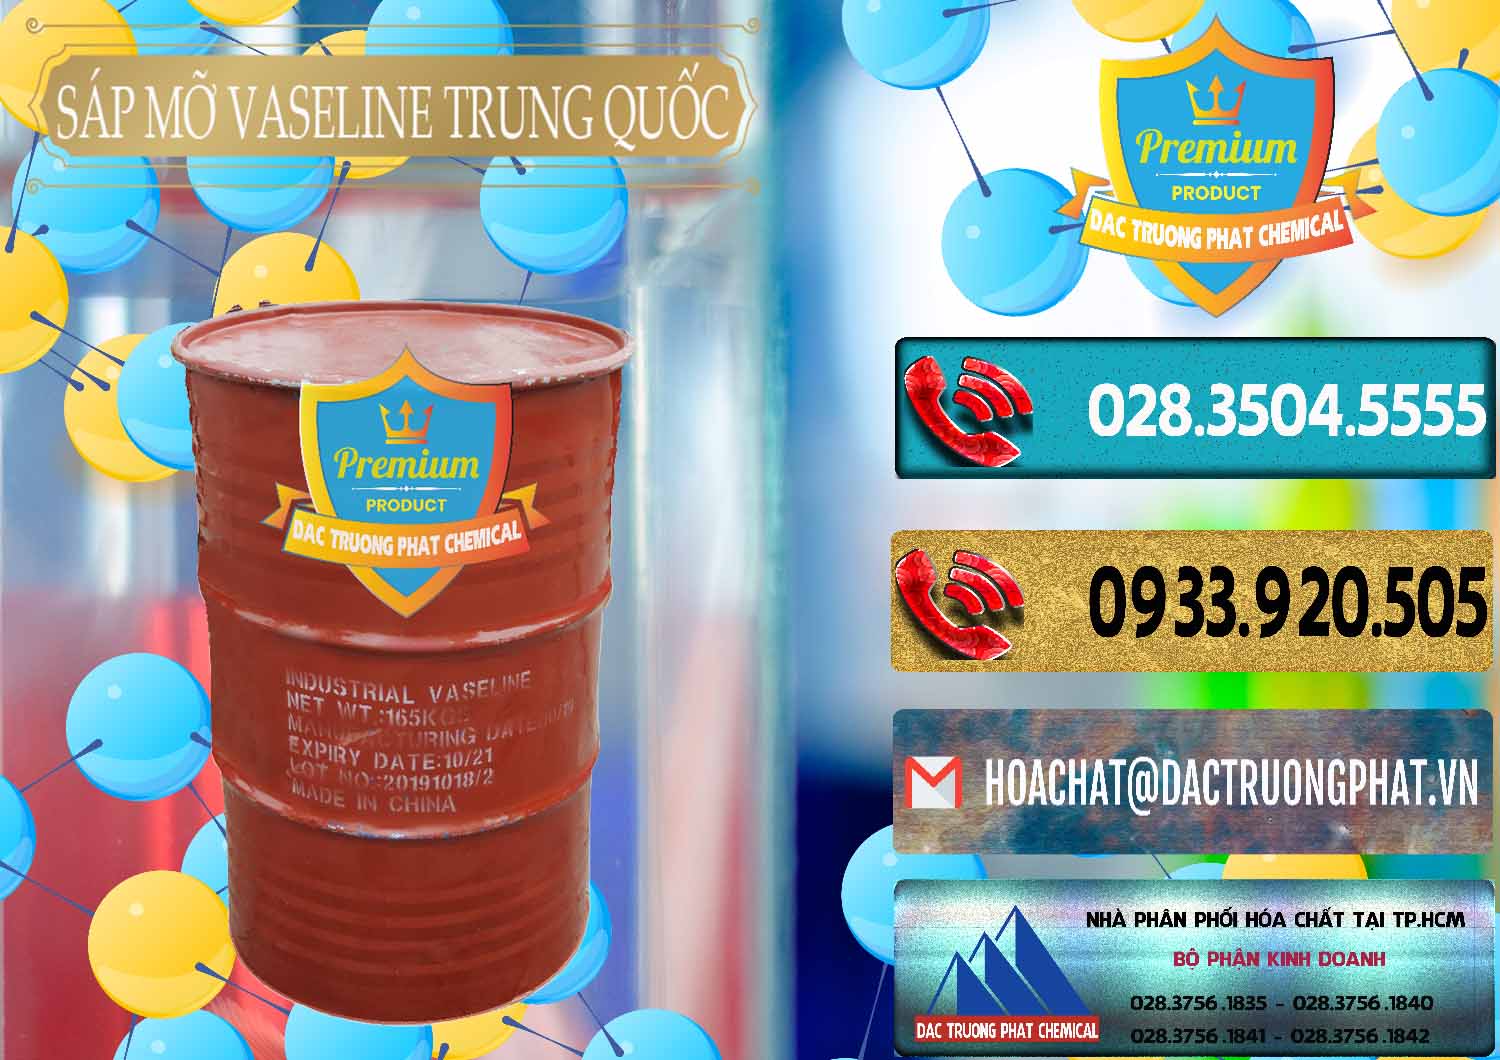 Nơi chuyên bán ( cung cấp ) Sáp Mỡ Vaseline Trung Quốc China - 0122 - Công ty kinh doanh & phân phối hóa chất tại TP.HCM - hoachatdetnhuom.com